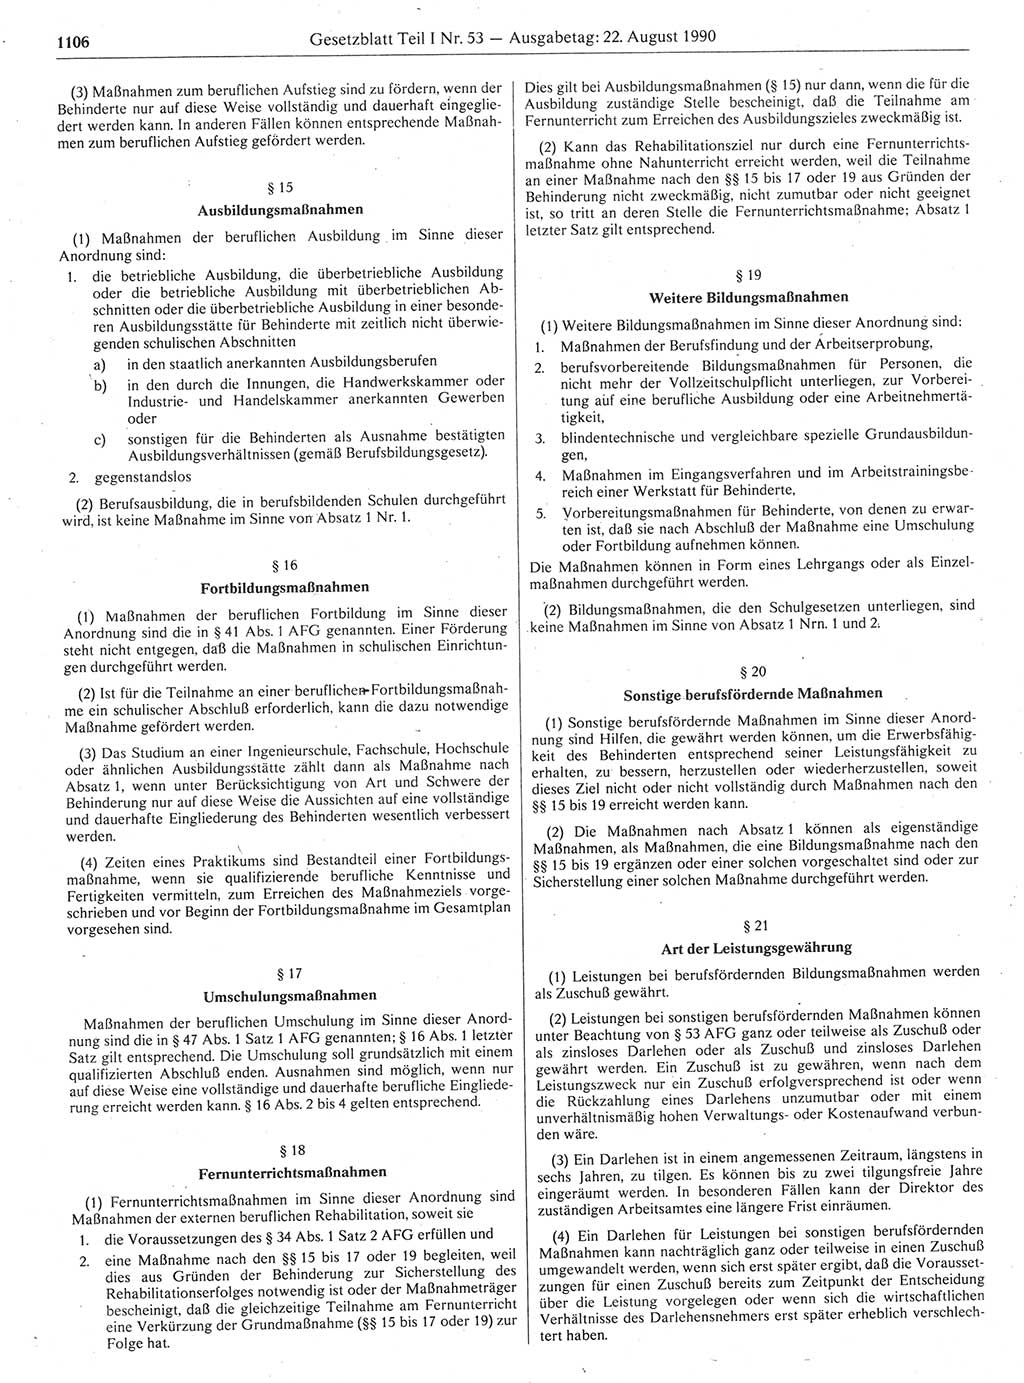 Gesetzblatt (GBl.) der Deutschen Demokratischen Republik (DDR) Teil Ⅰ 1990, Seite 1106 (GBl. DDR Ⅰ 1990, S. 1106)